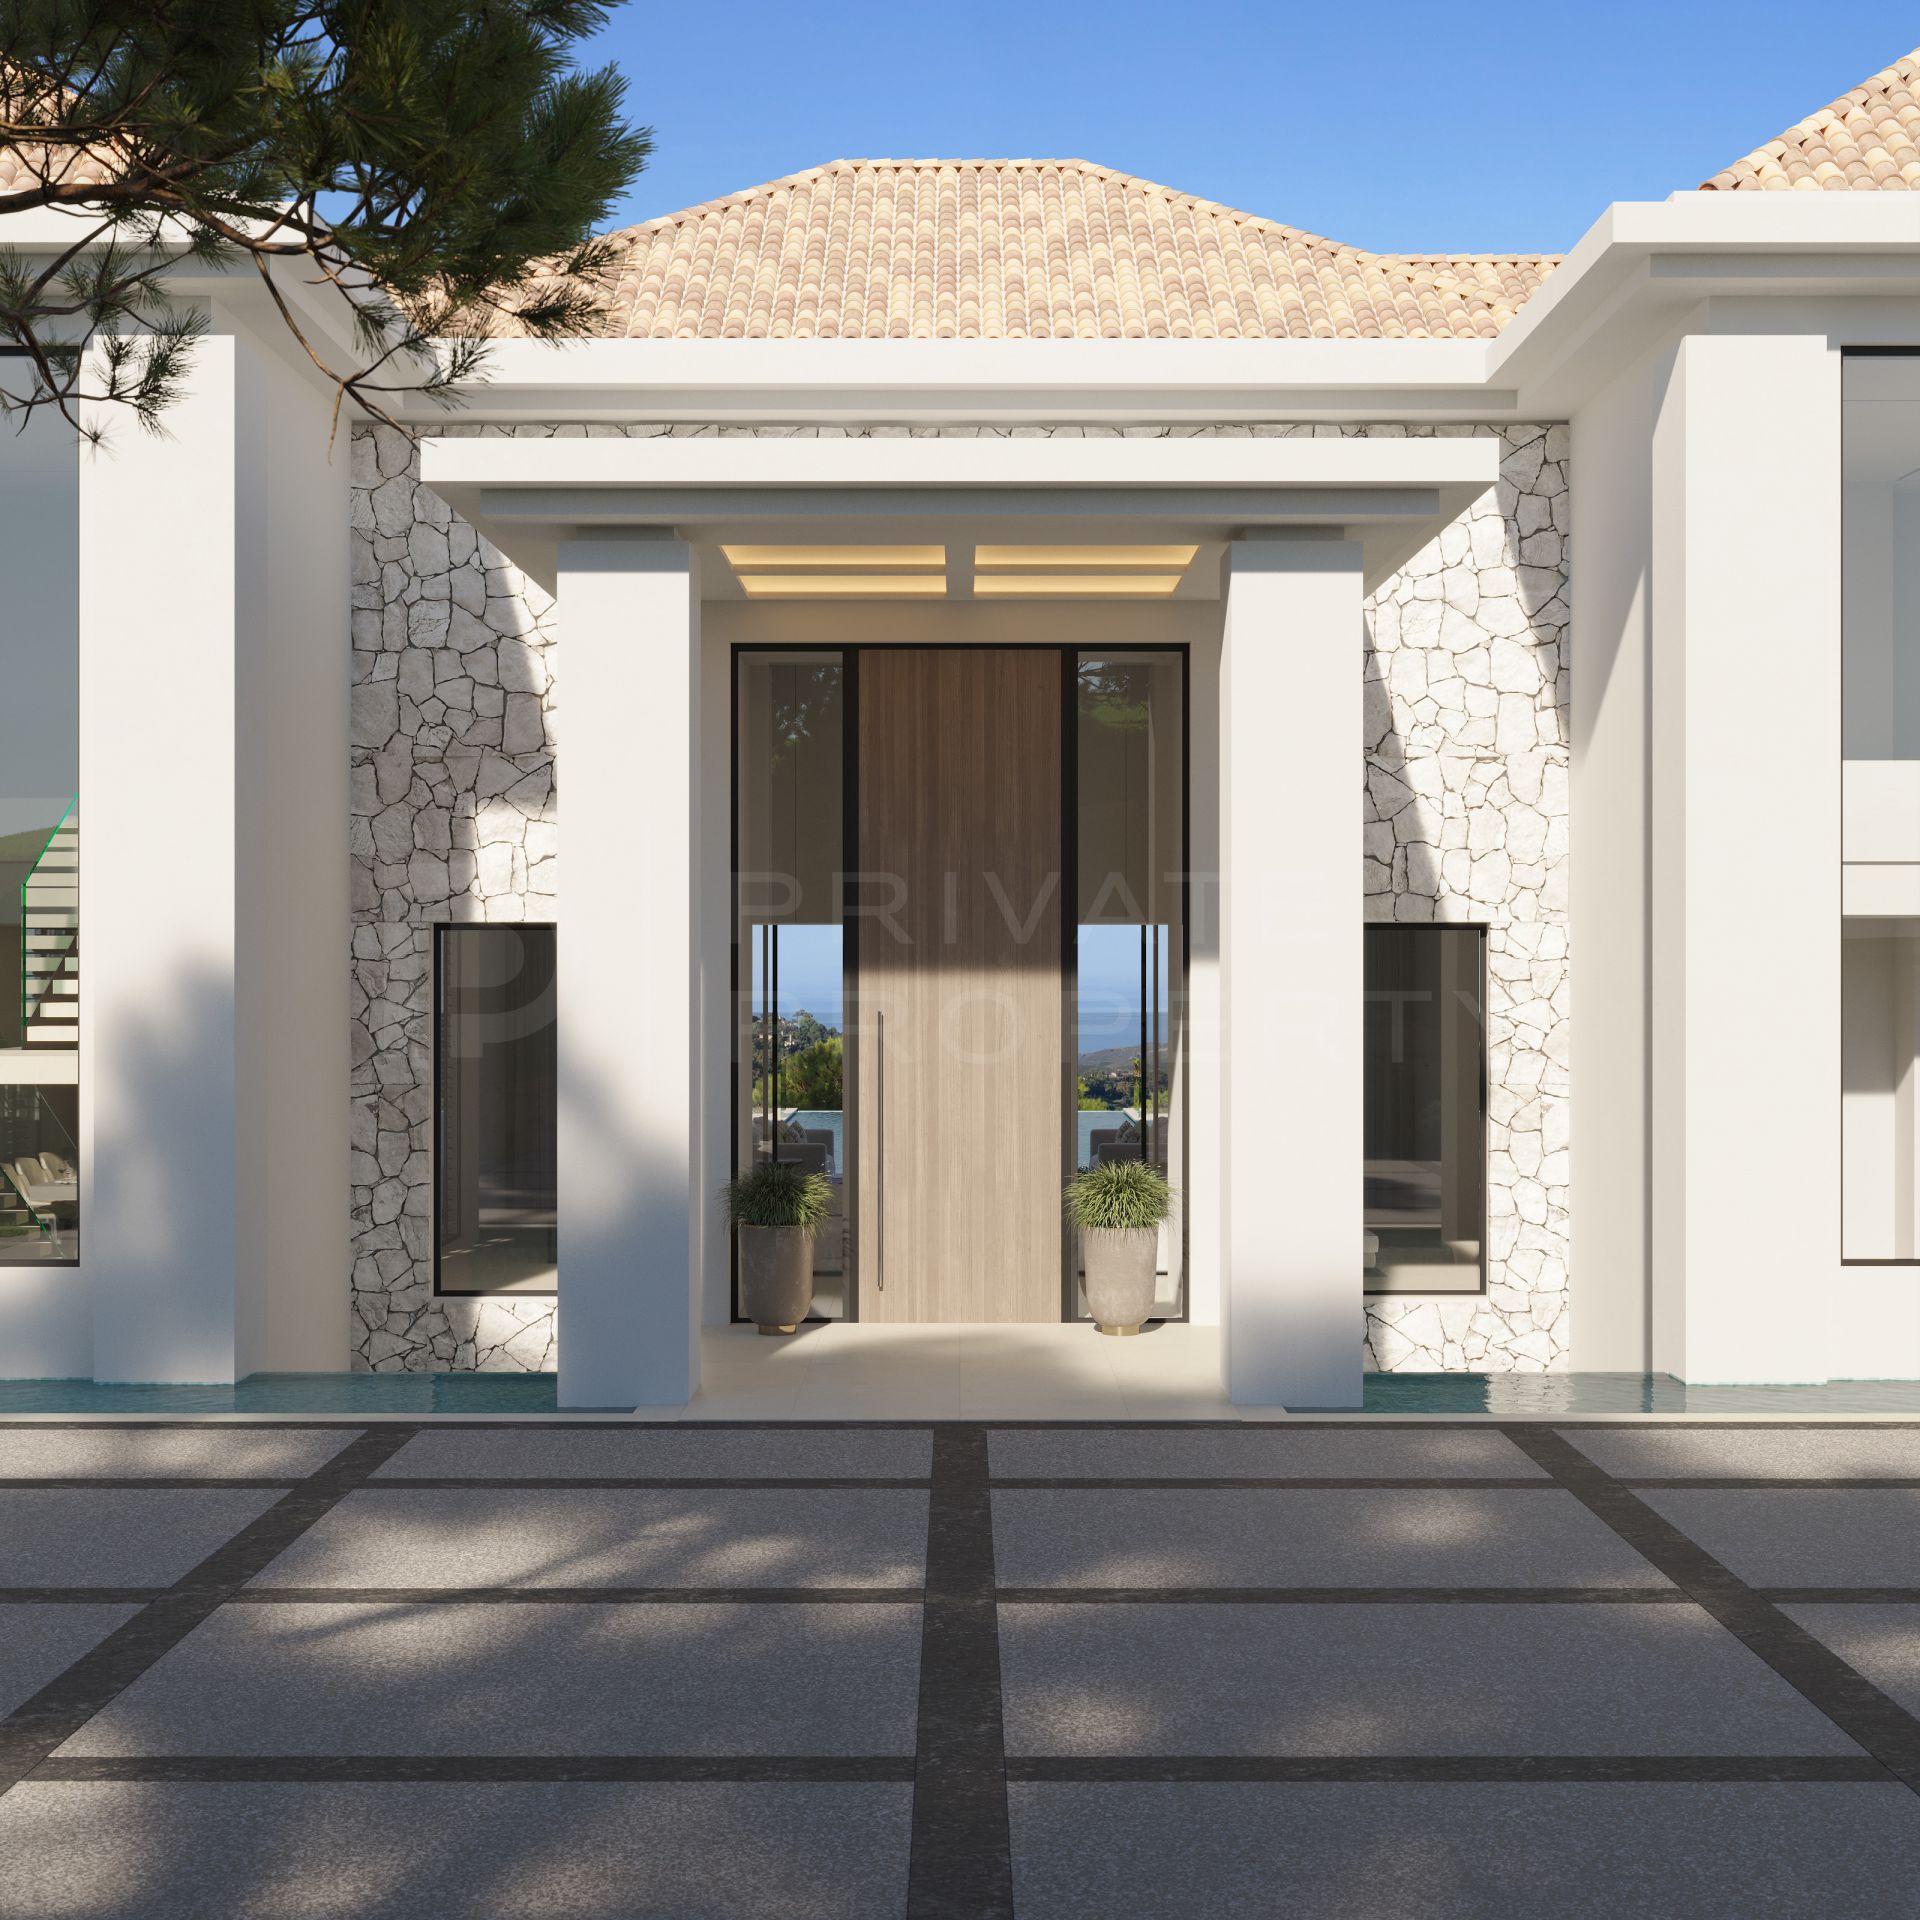 Spectacular brand new villa in La Zagaleta